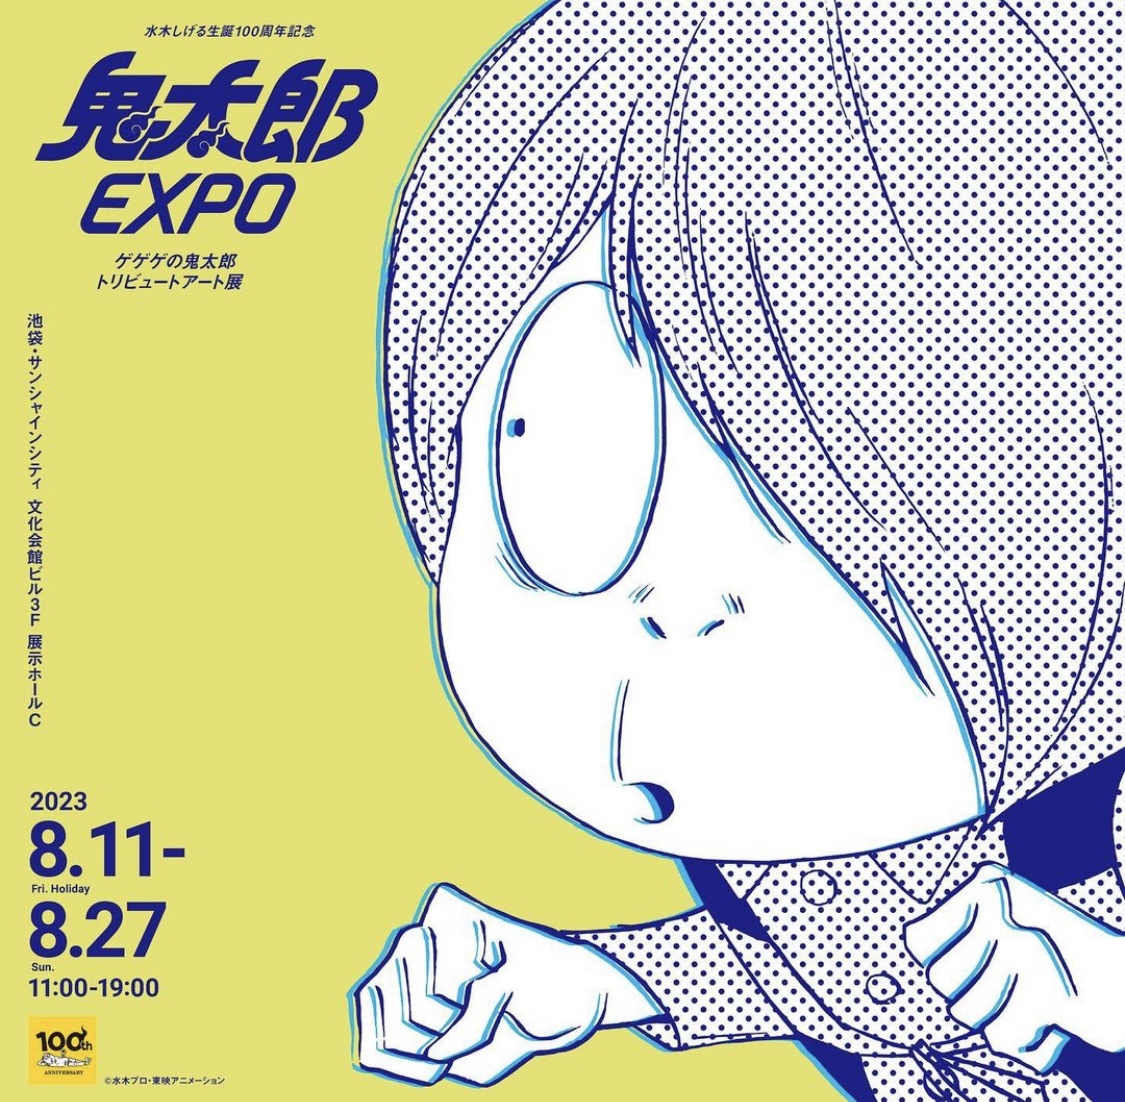 【イベント出展】鬼太郎EXPO